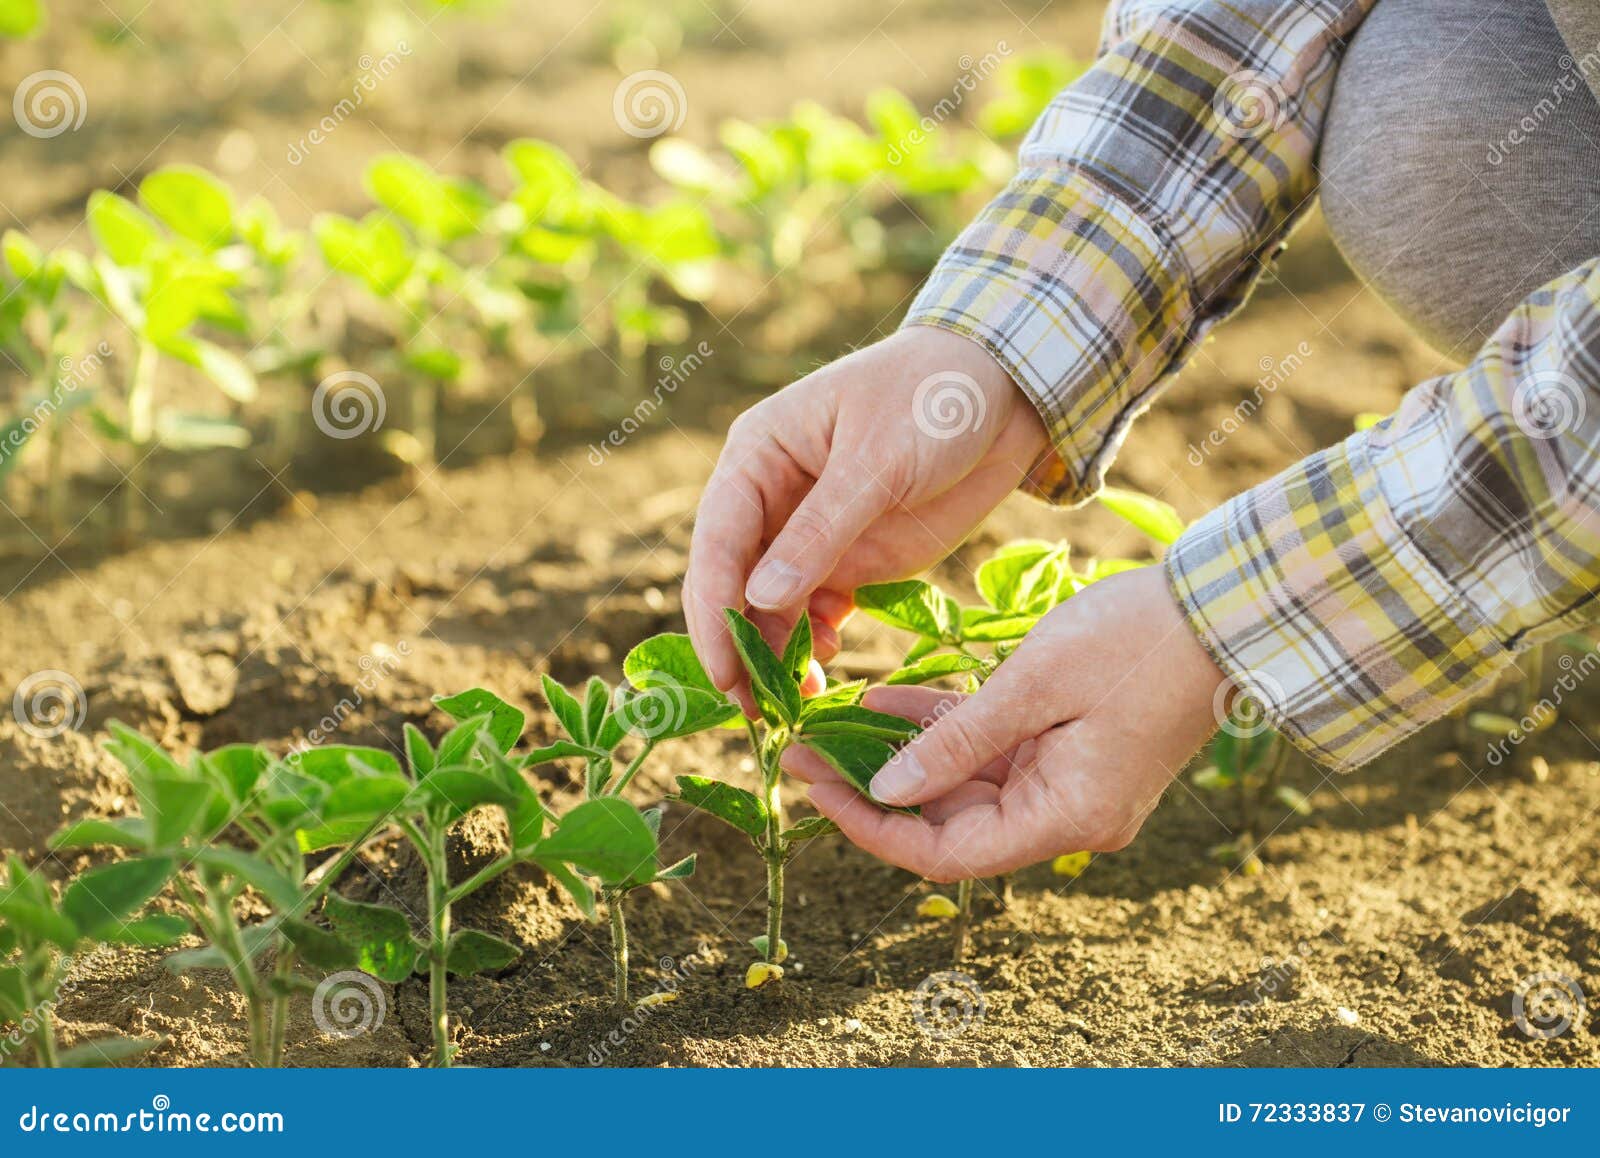 female farmer's hands in soybean field, responsible farming